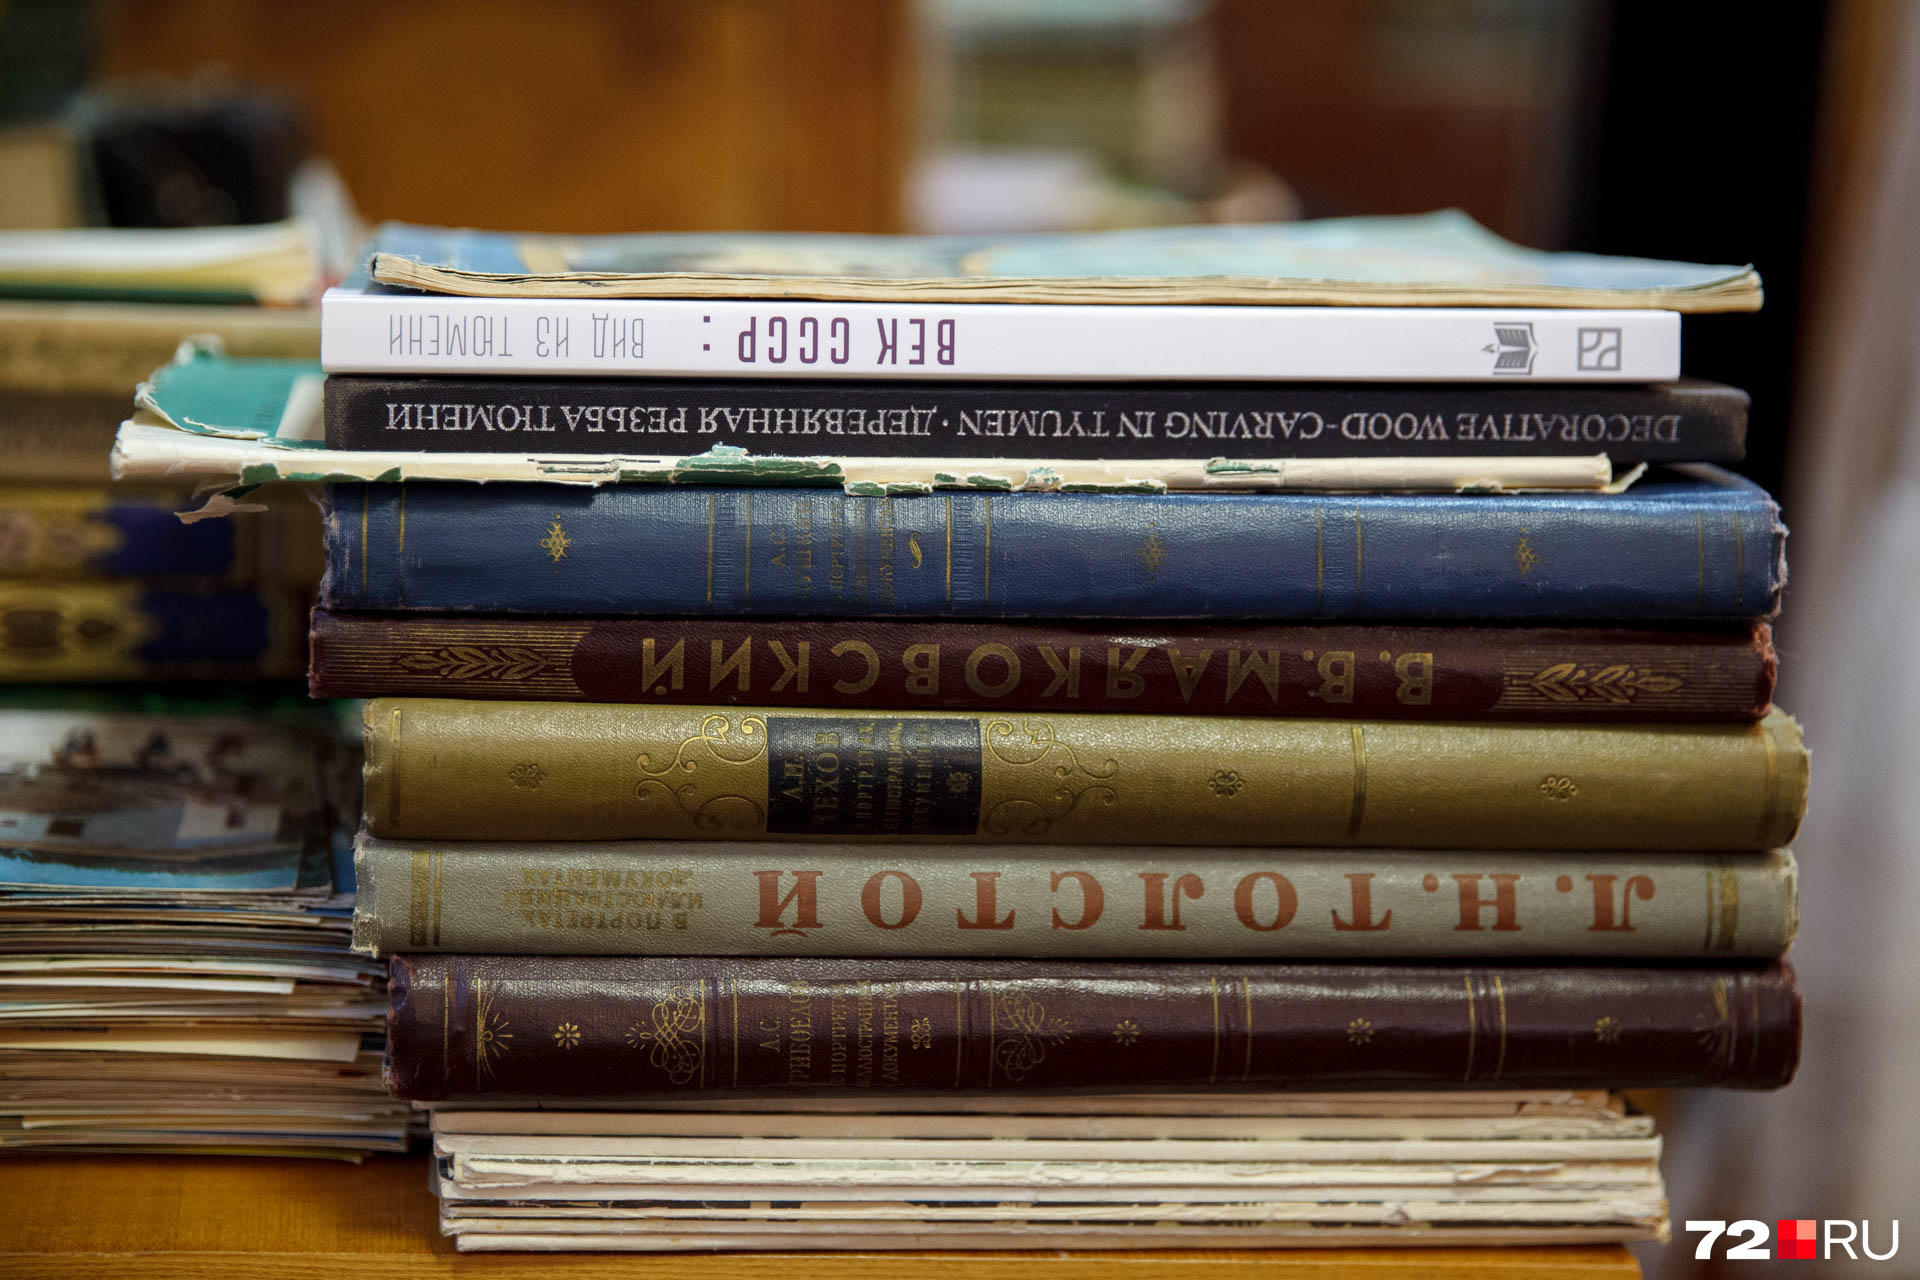 Книги, книги, книги. Обширная библиотека — обычное дело в прошлом